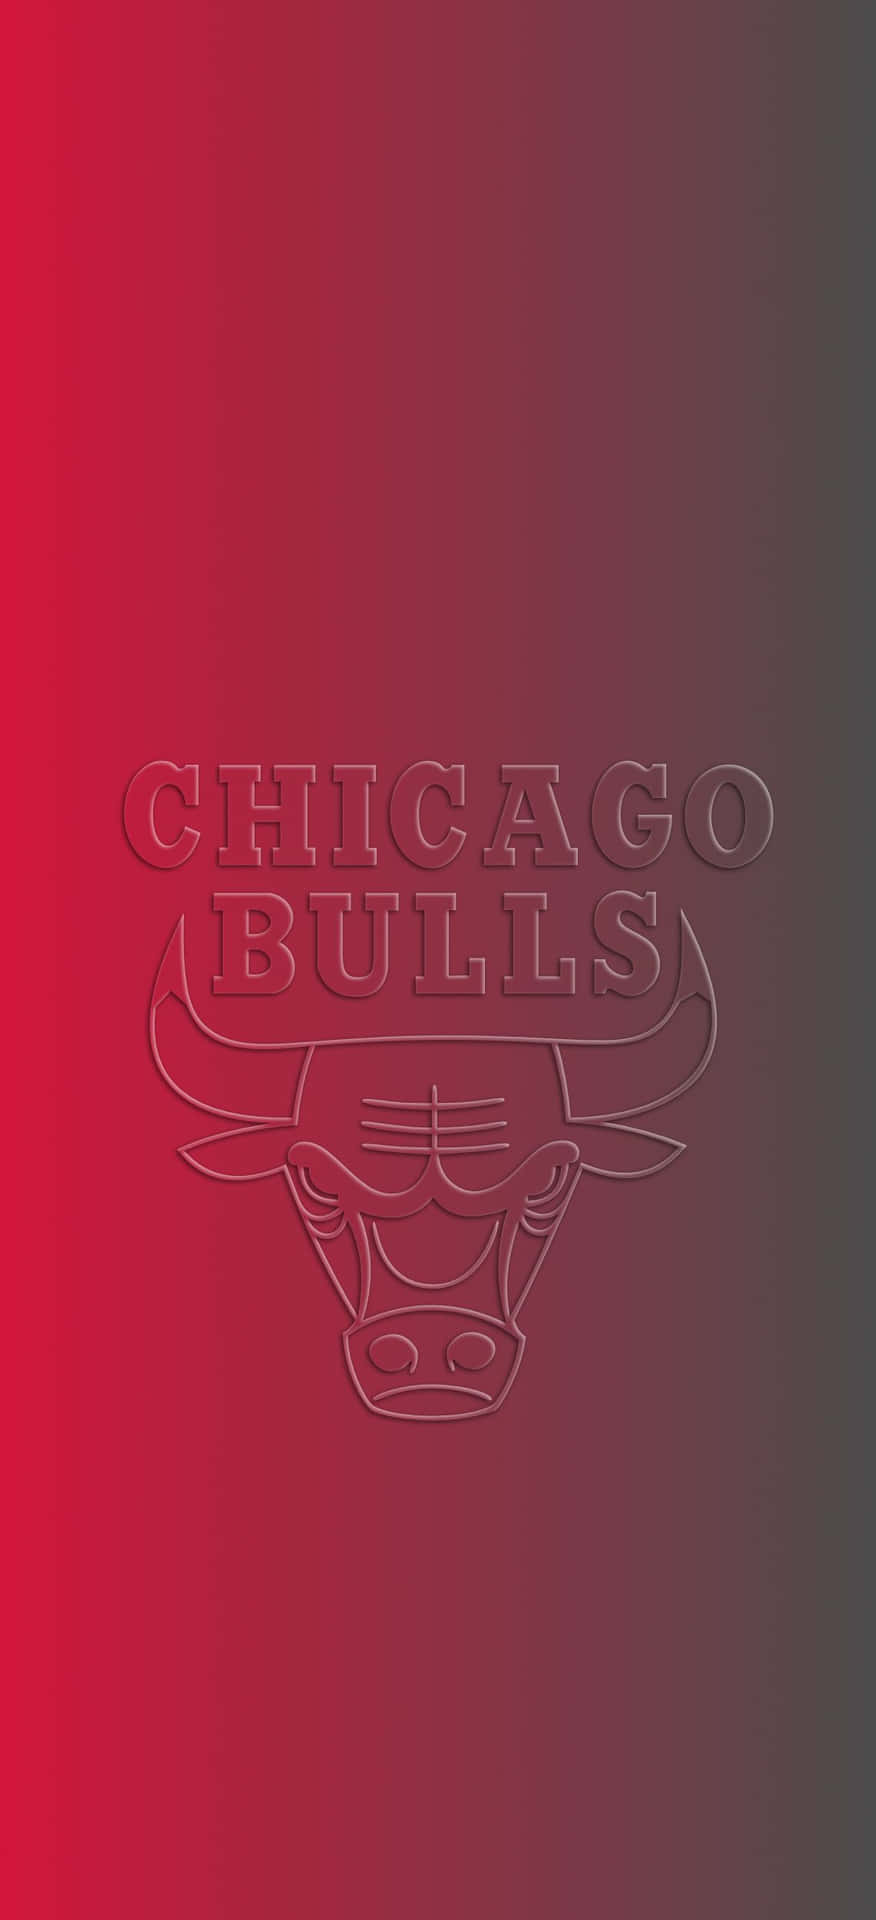 Mostrala Tua Passione Per Il Basket Con Lo Sfondo Chicago Bulls Per Iphone. Sfondo